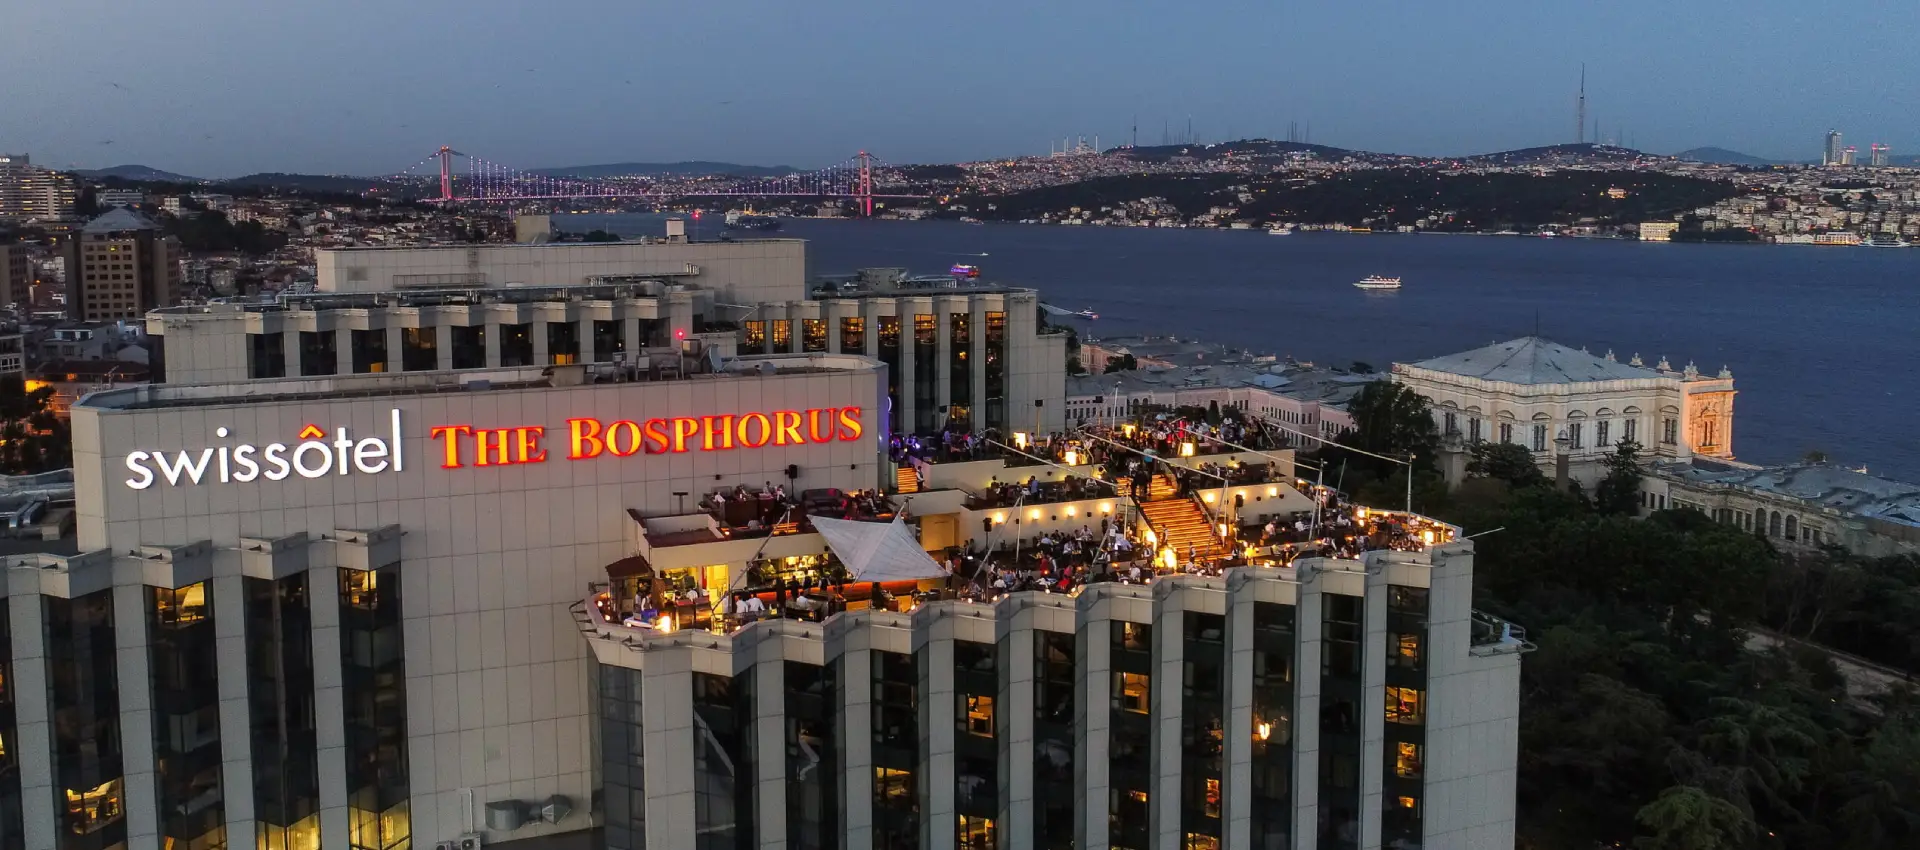 Swissotel-The-Bosphorus